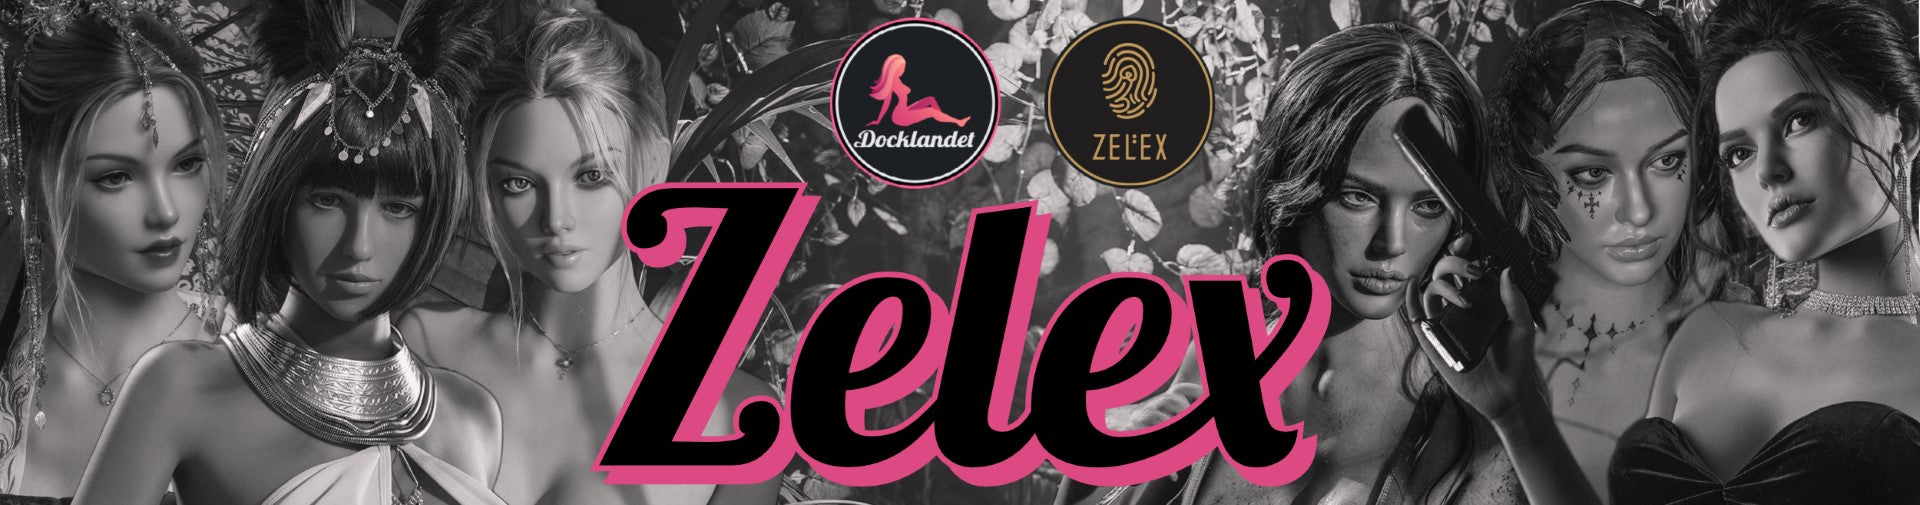 Zelex är experter på real dolls och sexdockor. Deras dockor är gjorda av TPE och silikon av absolut högsta kvalitet (importerad från USA). Köp din Zelex real doll hos Docklandet idag. Zelex är en av Kinas främsta tillverkare av verklighetstrogna dockor.